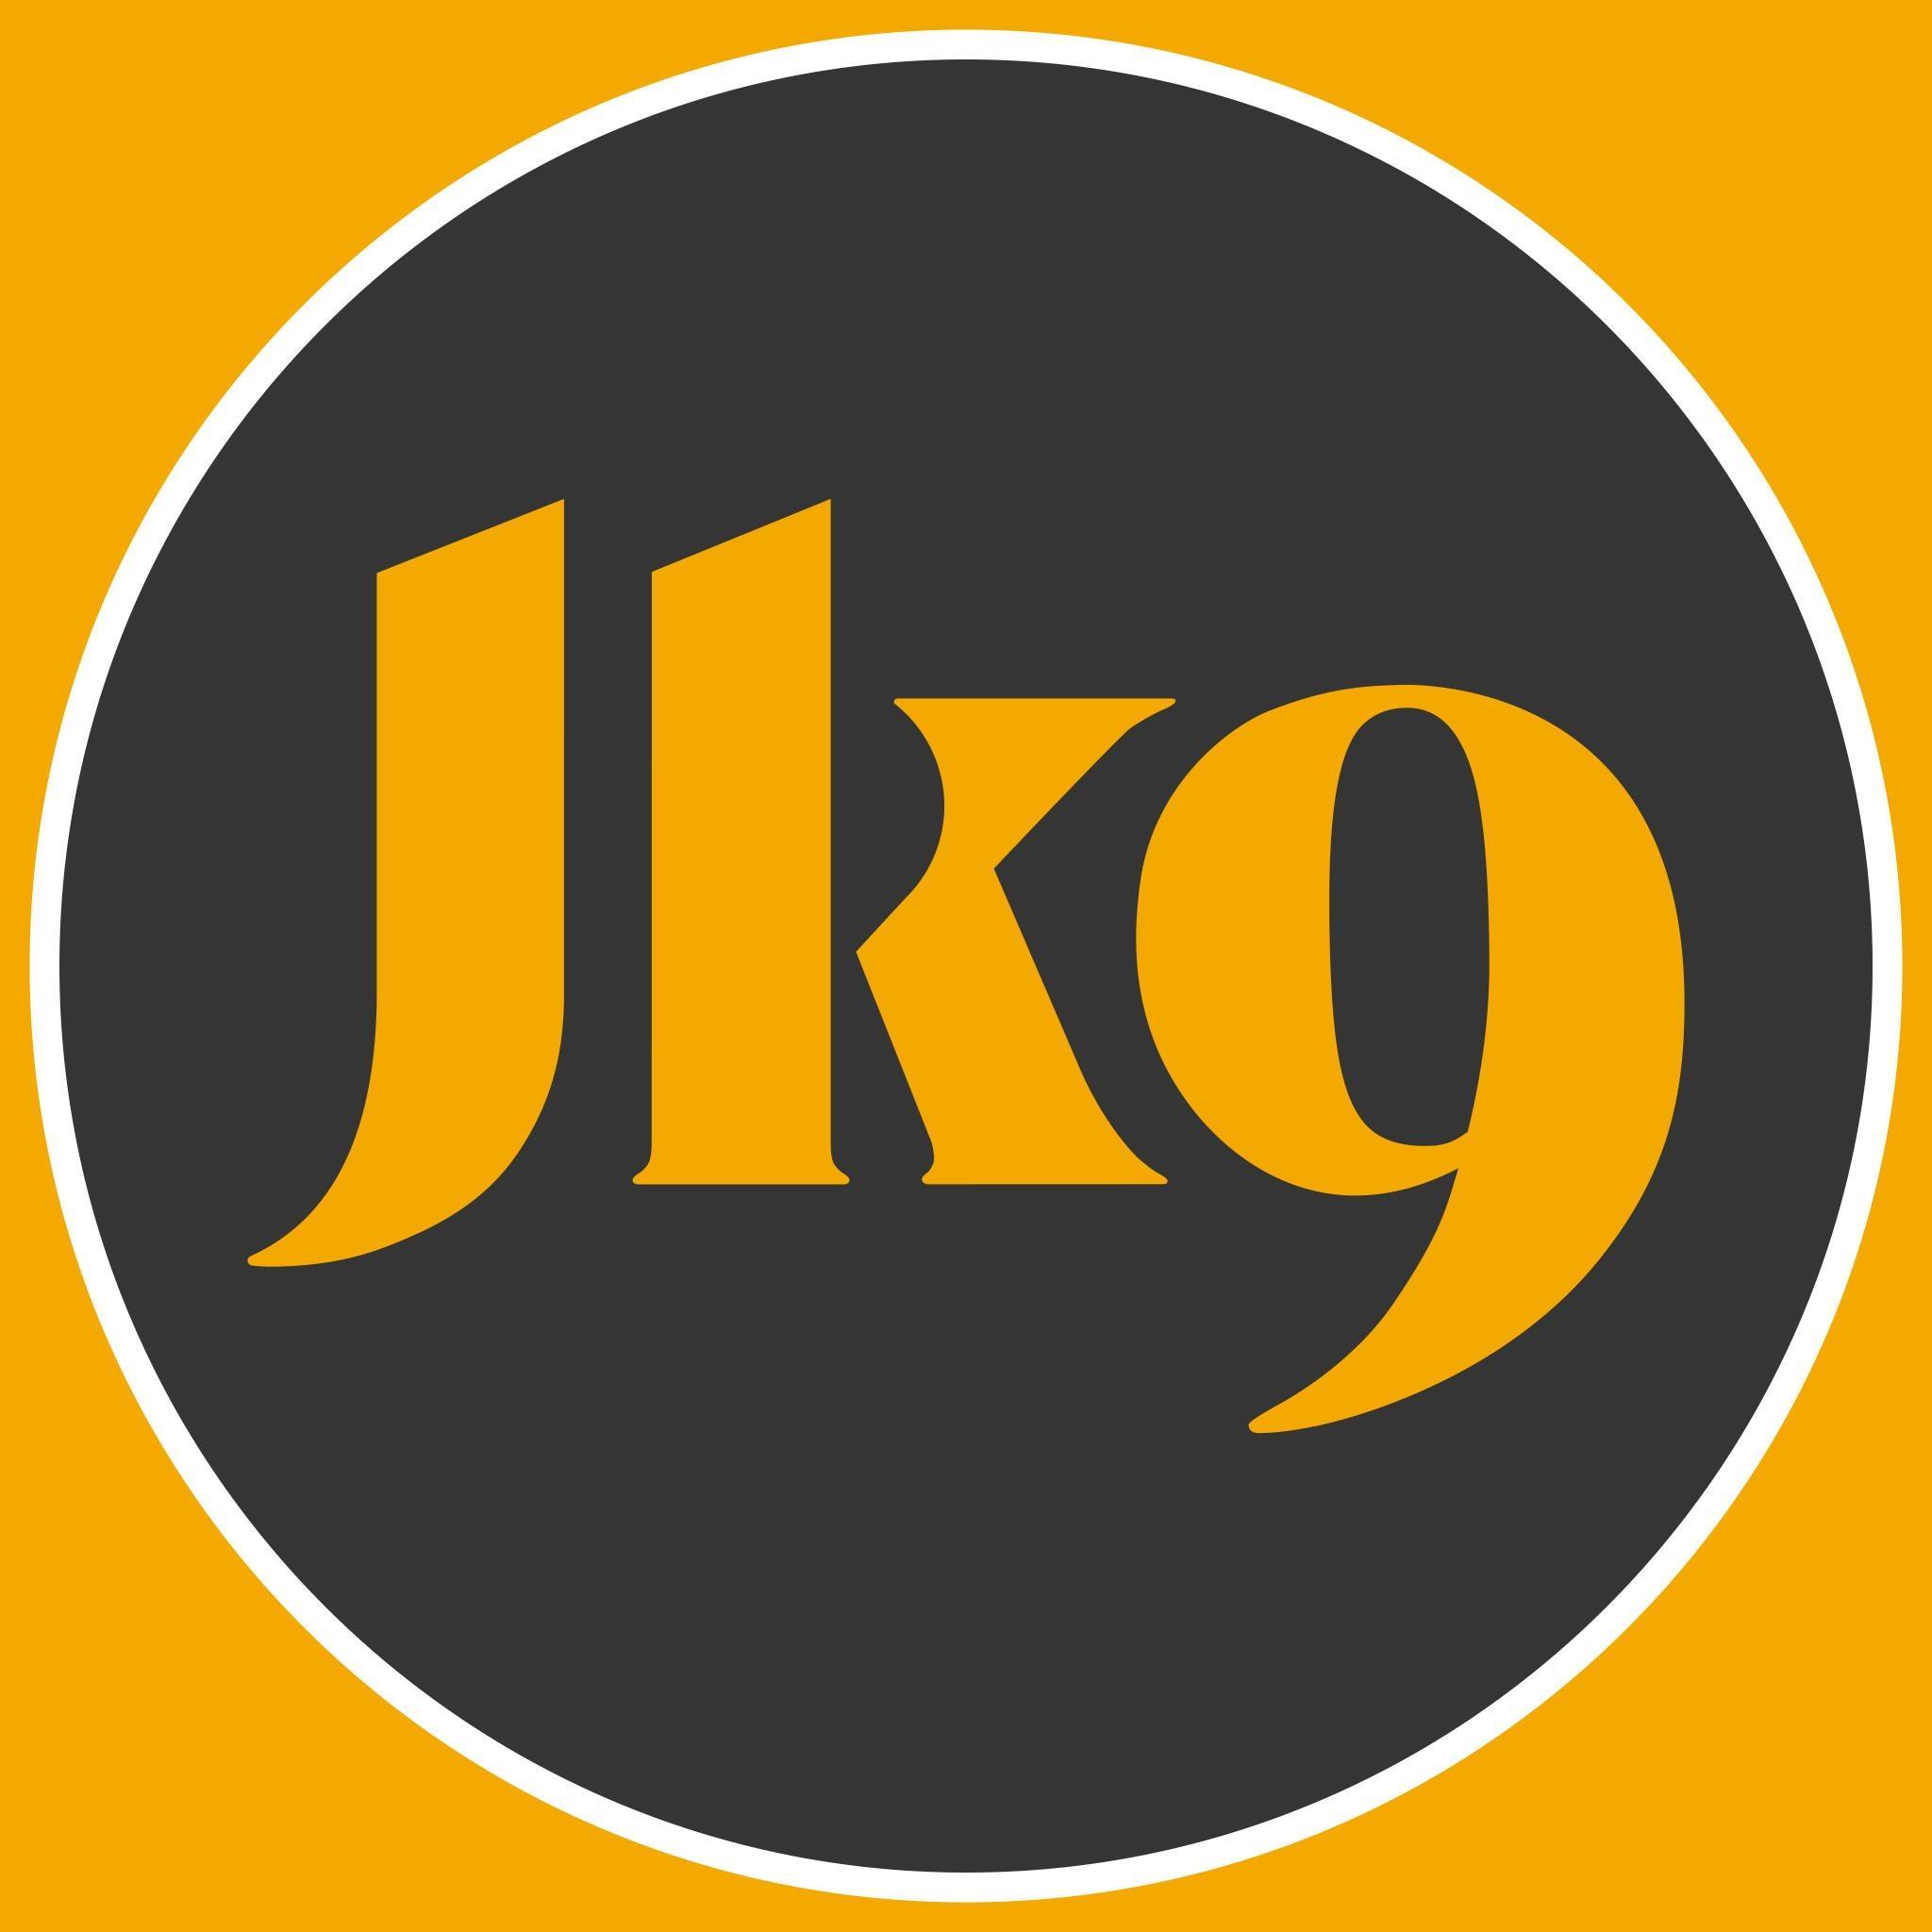 Julius-K9 LLC